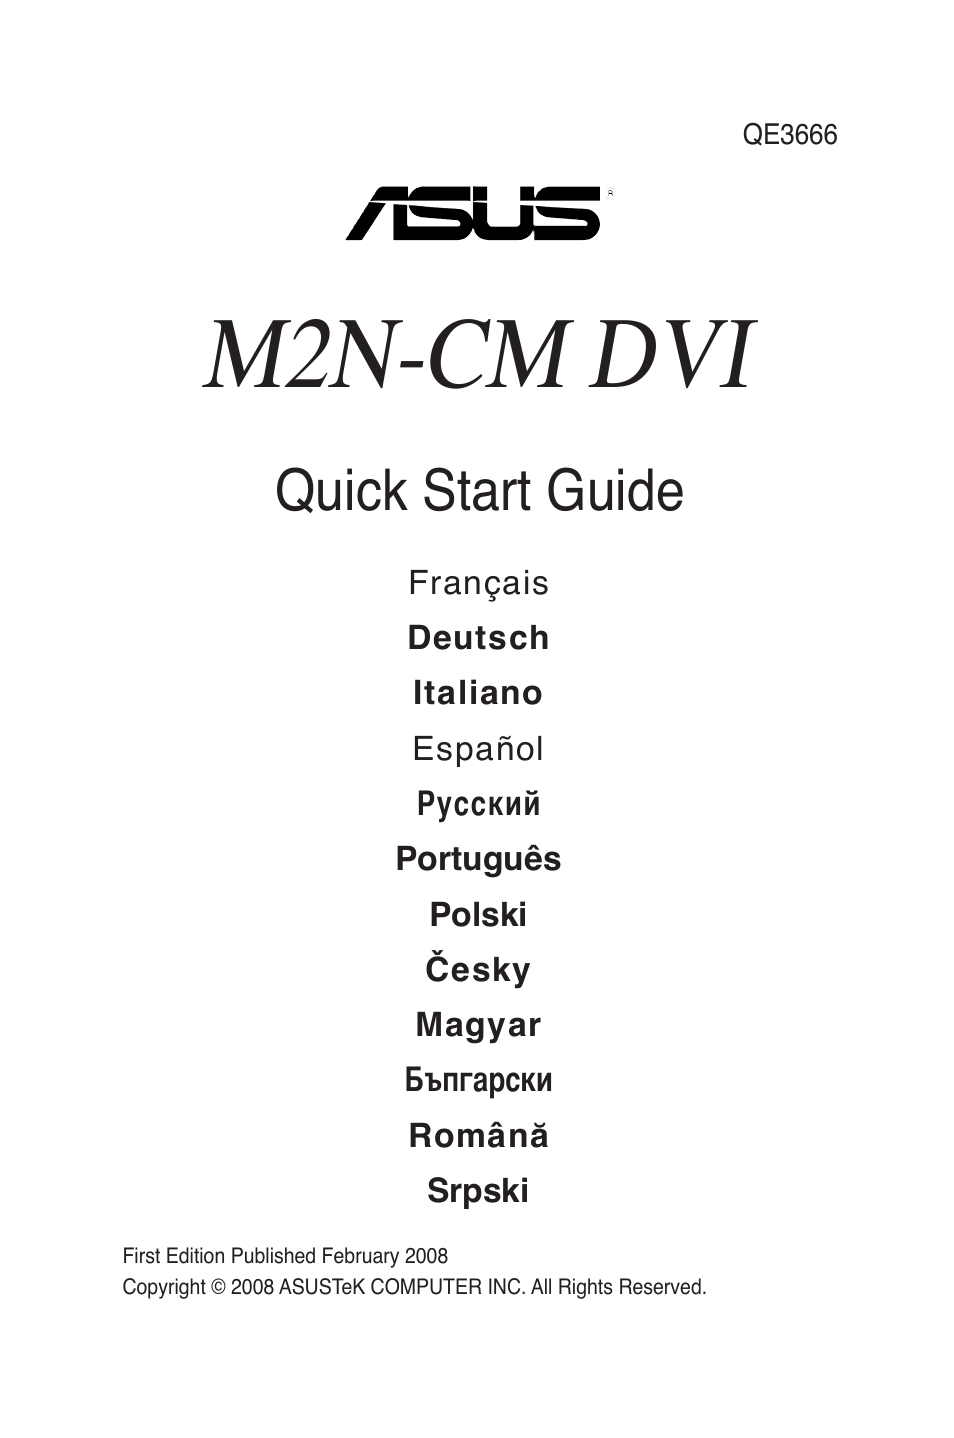 M2N-VM DVI